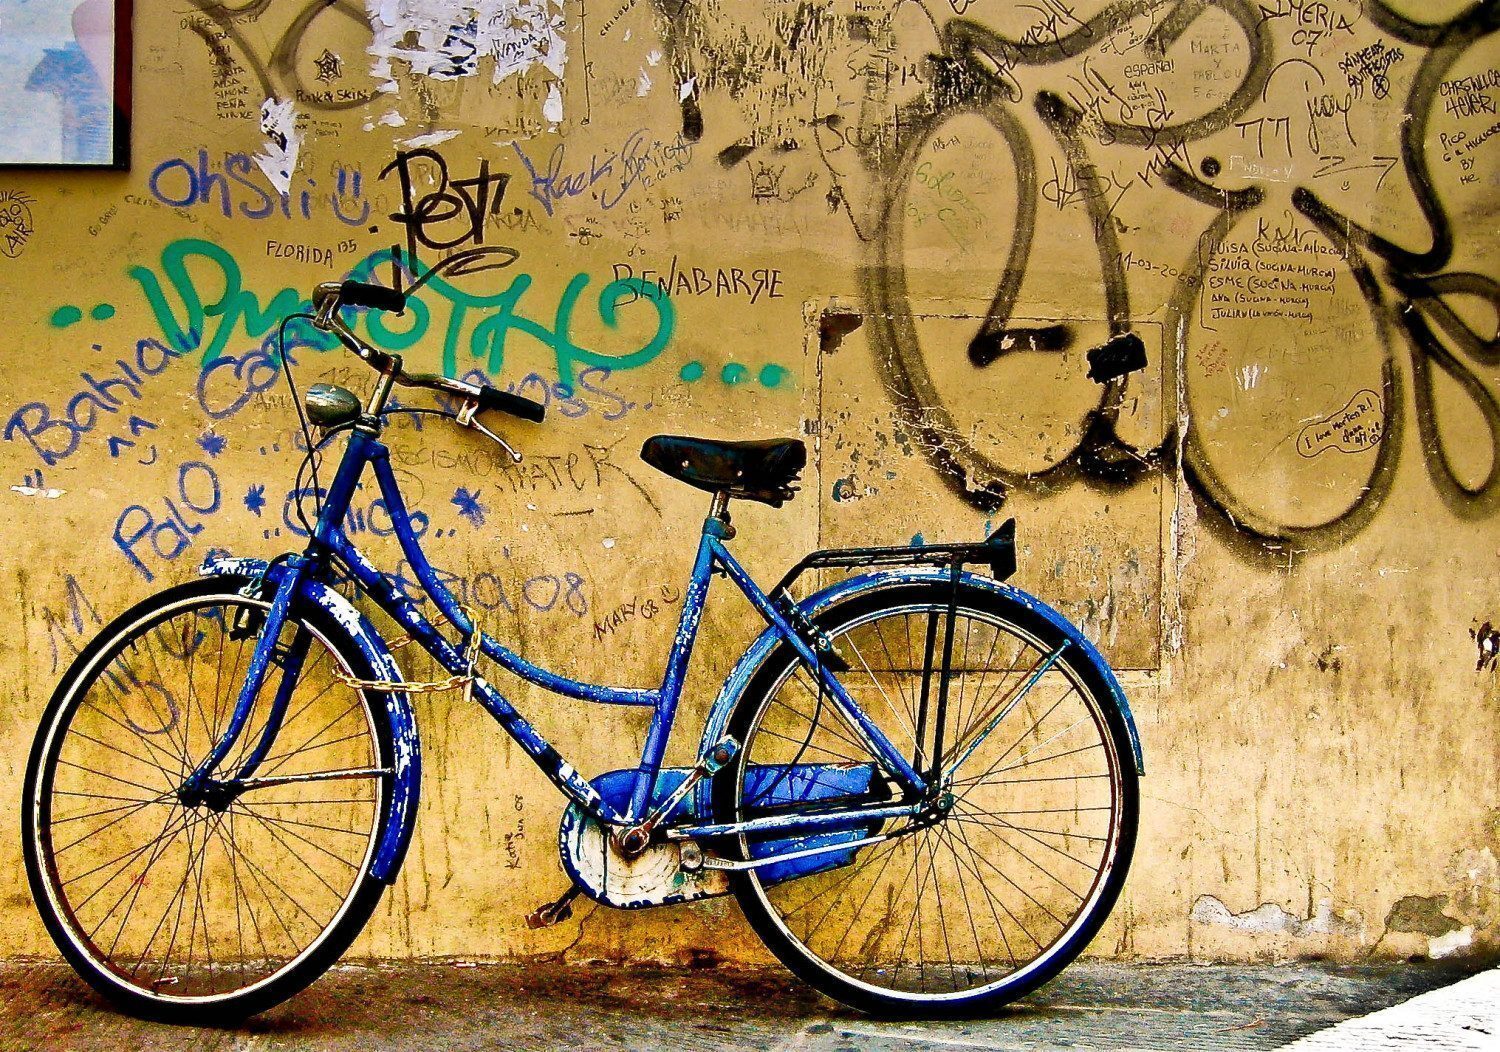 Blue Bike